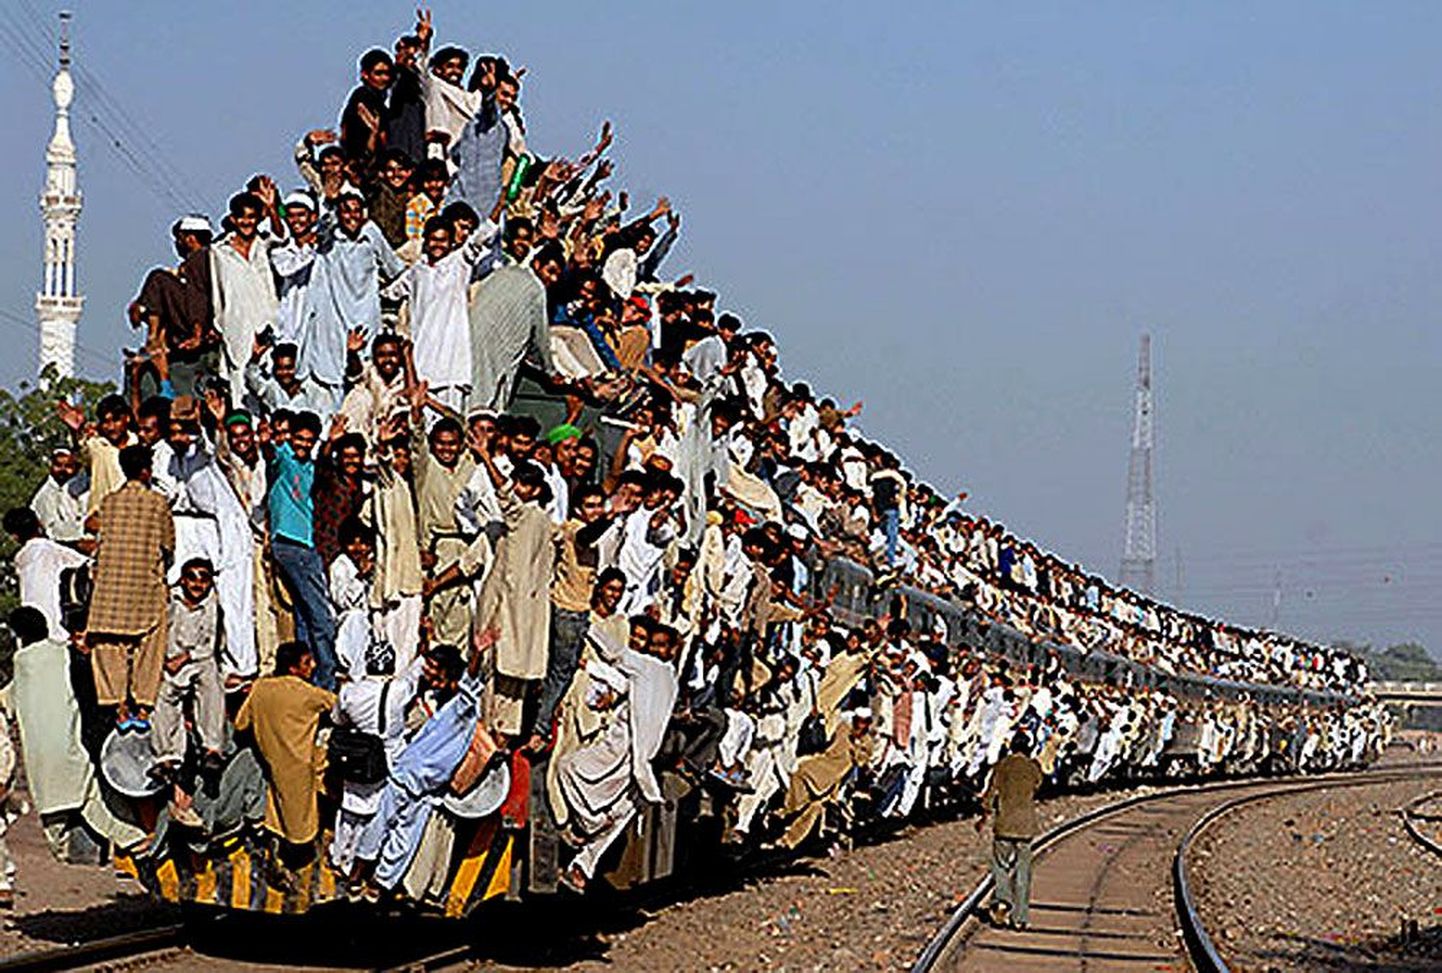 Pildil on rong Pakistanis, kui inimesed pöörduvad koju tagasi kolmepäevaselt usukogunemiselt.